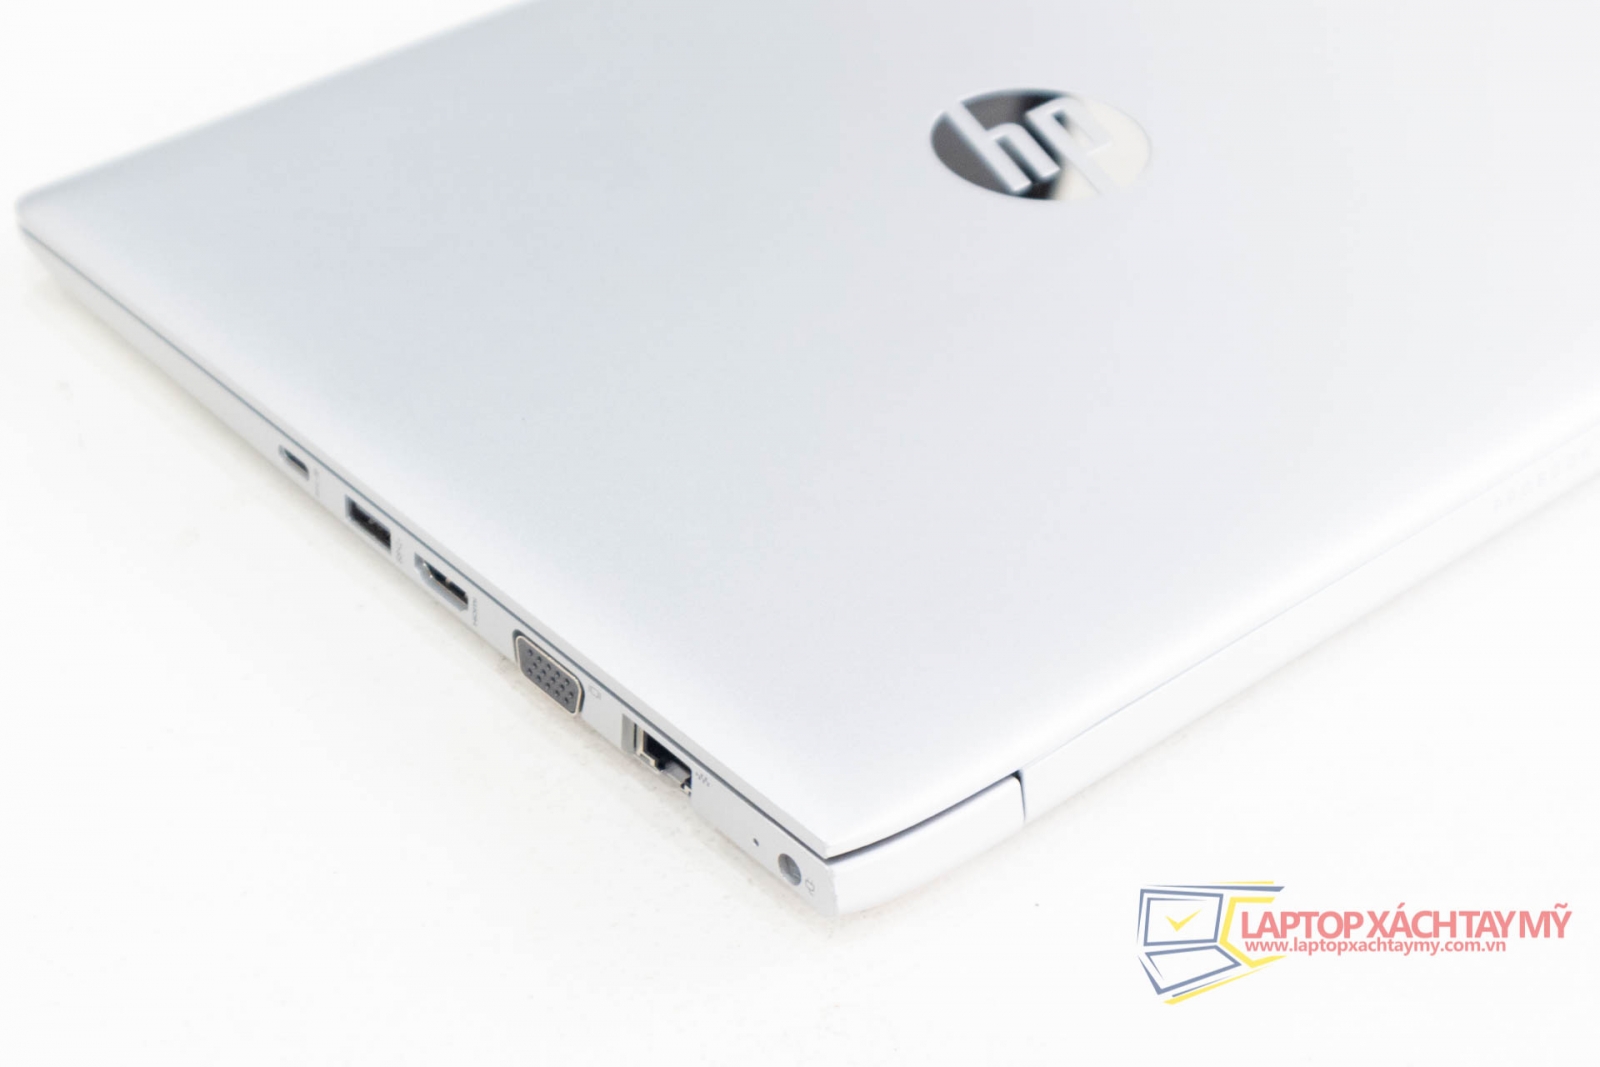 HP Probook 430 G5 Intel I7 8550U, Ram 8G, SSD 256G. Laptop cũ 8th